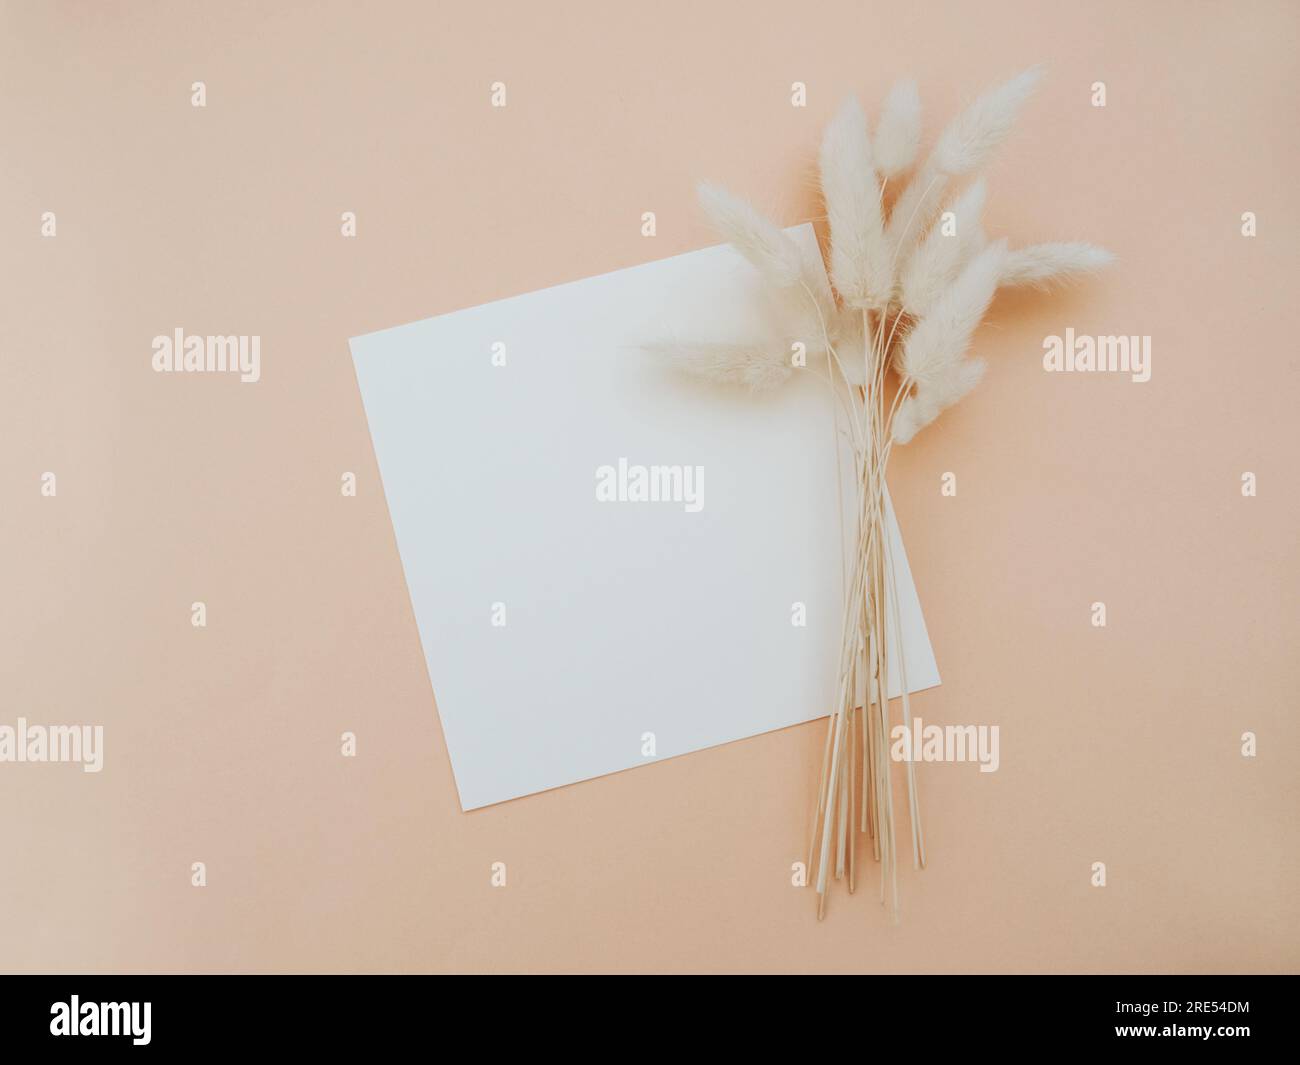 Maquette de carte carrée en papier blanc vierge et branche florale sèche sur fond beige. Modèle esthétique minimal. Plan d'agencement, vue de dessus Banque D'Images